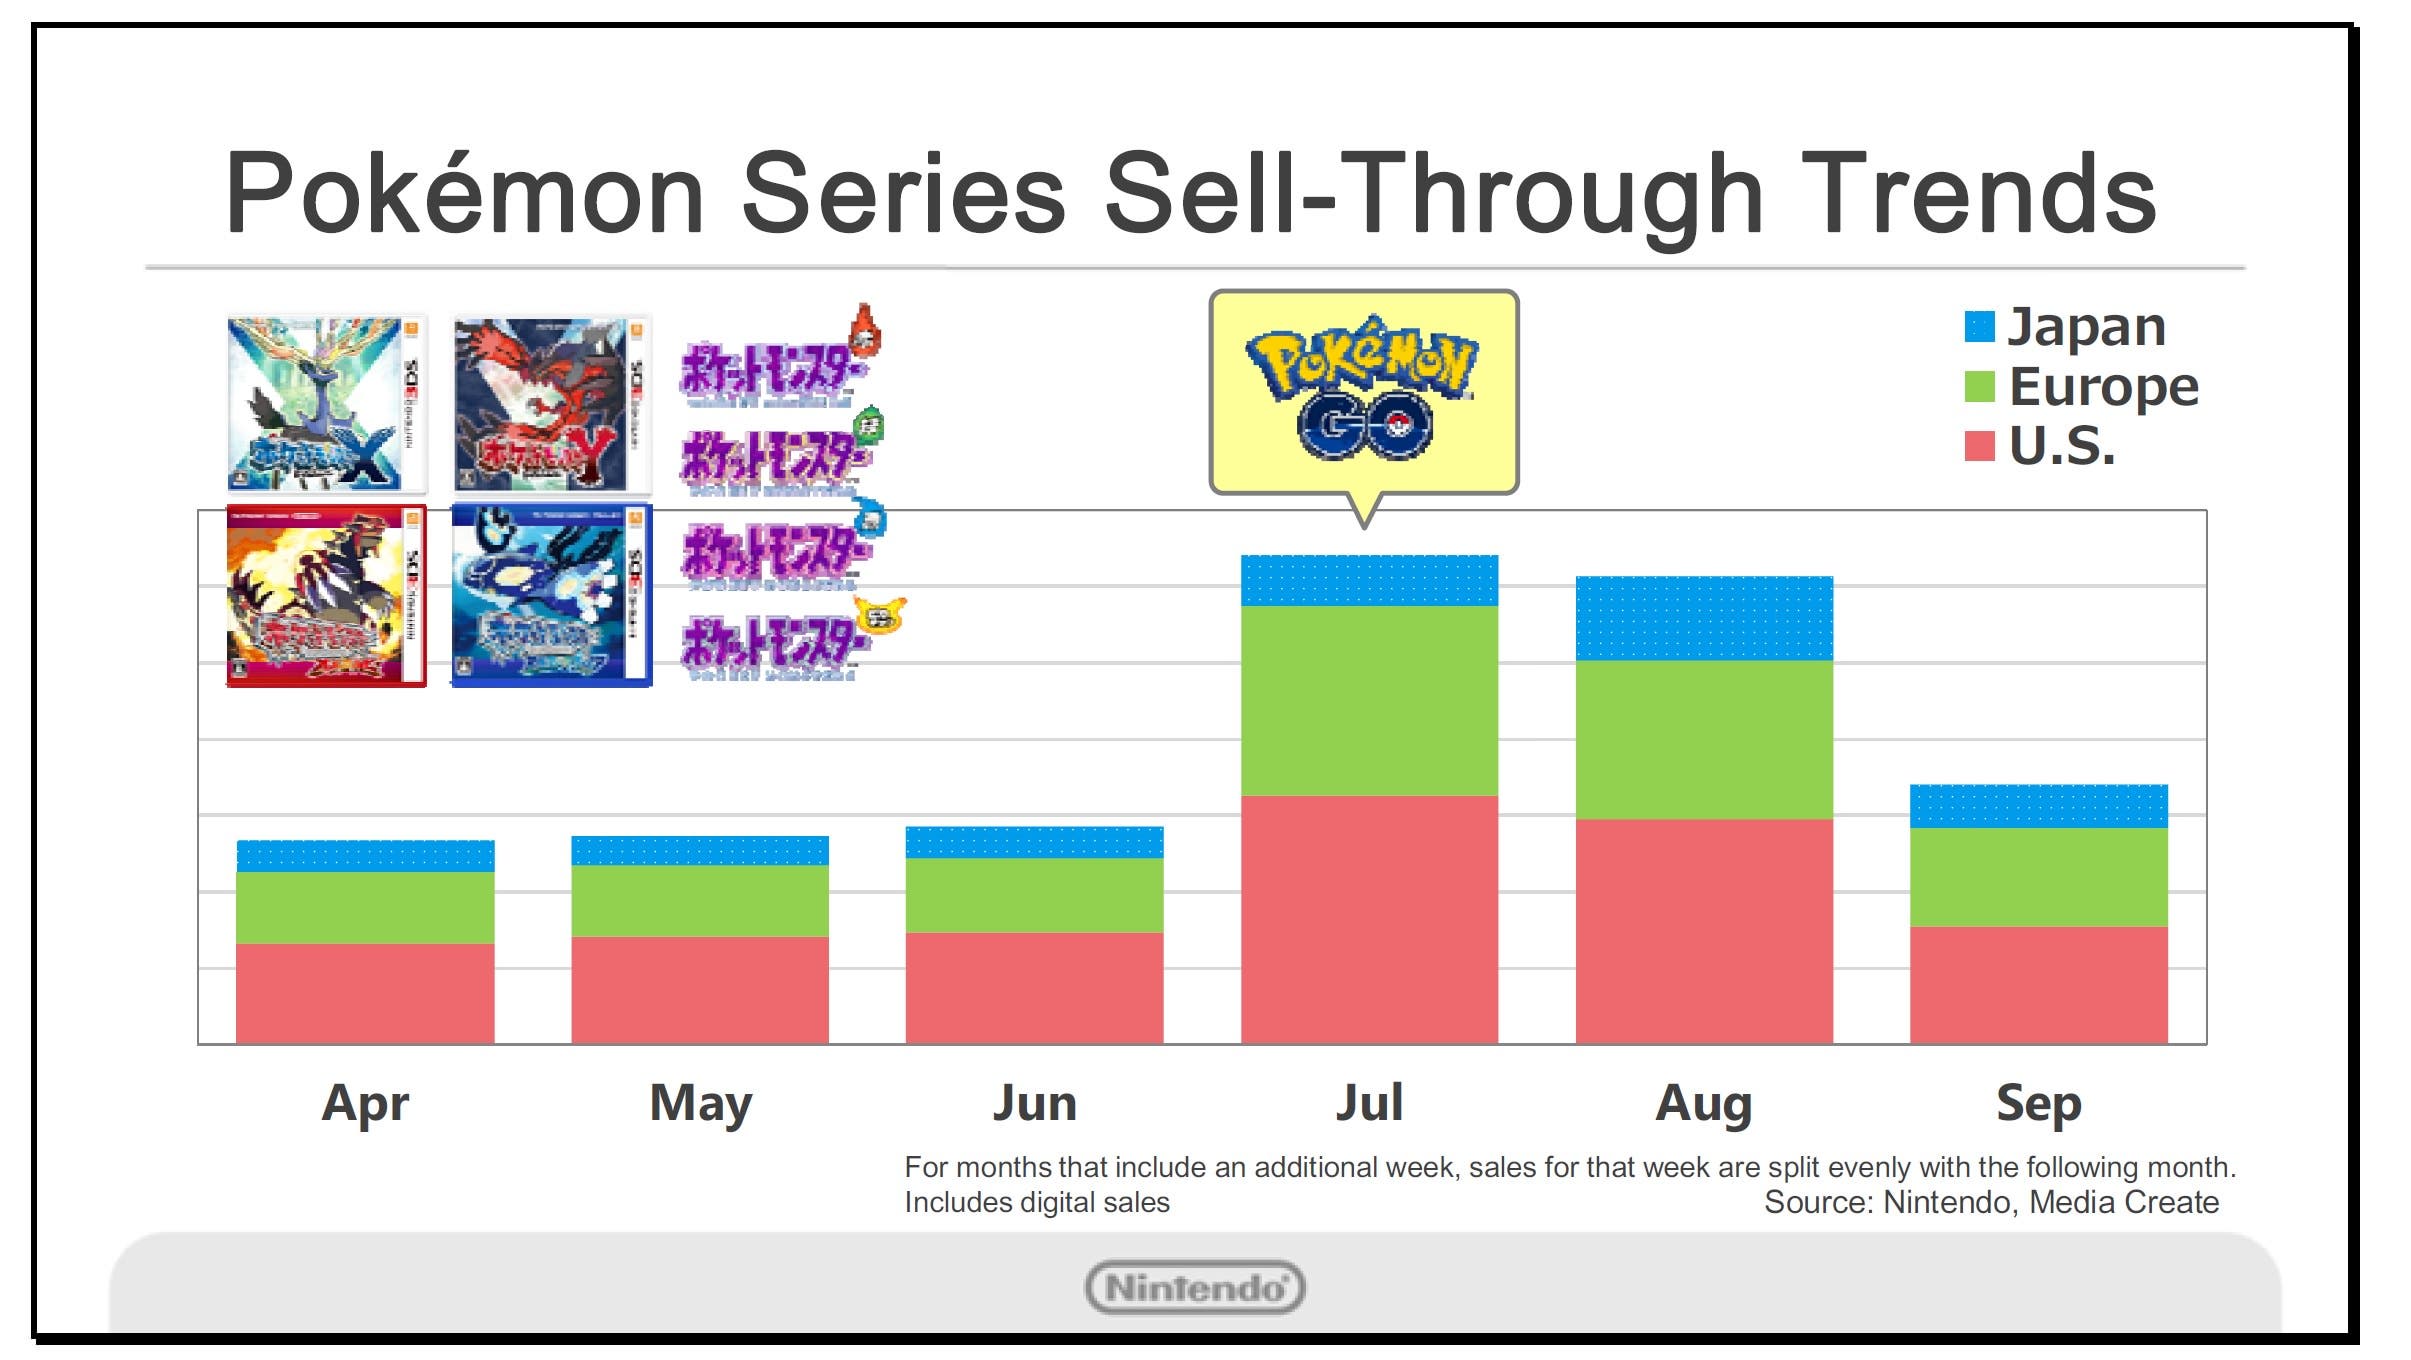 Kimishima comparte detalles sobre cómo ‘Pokémon GO’ ha impulsado las ventas de 3DS